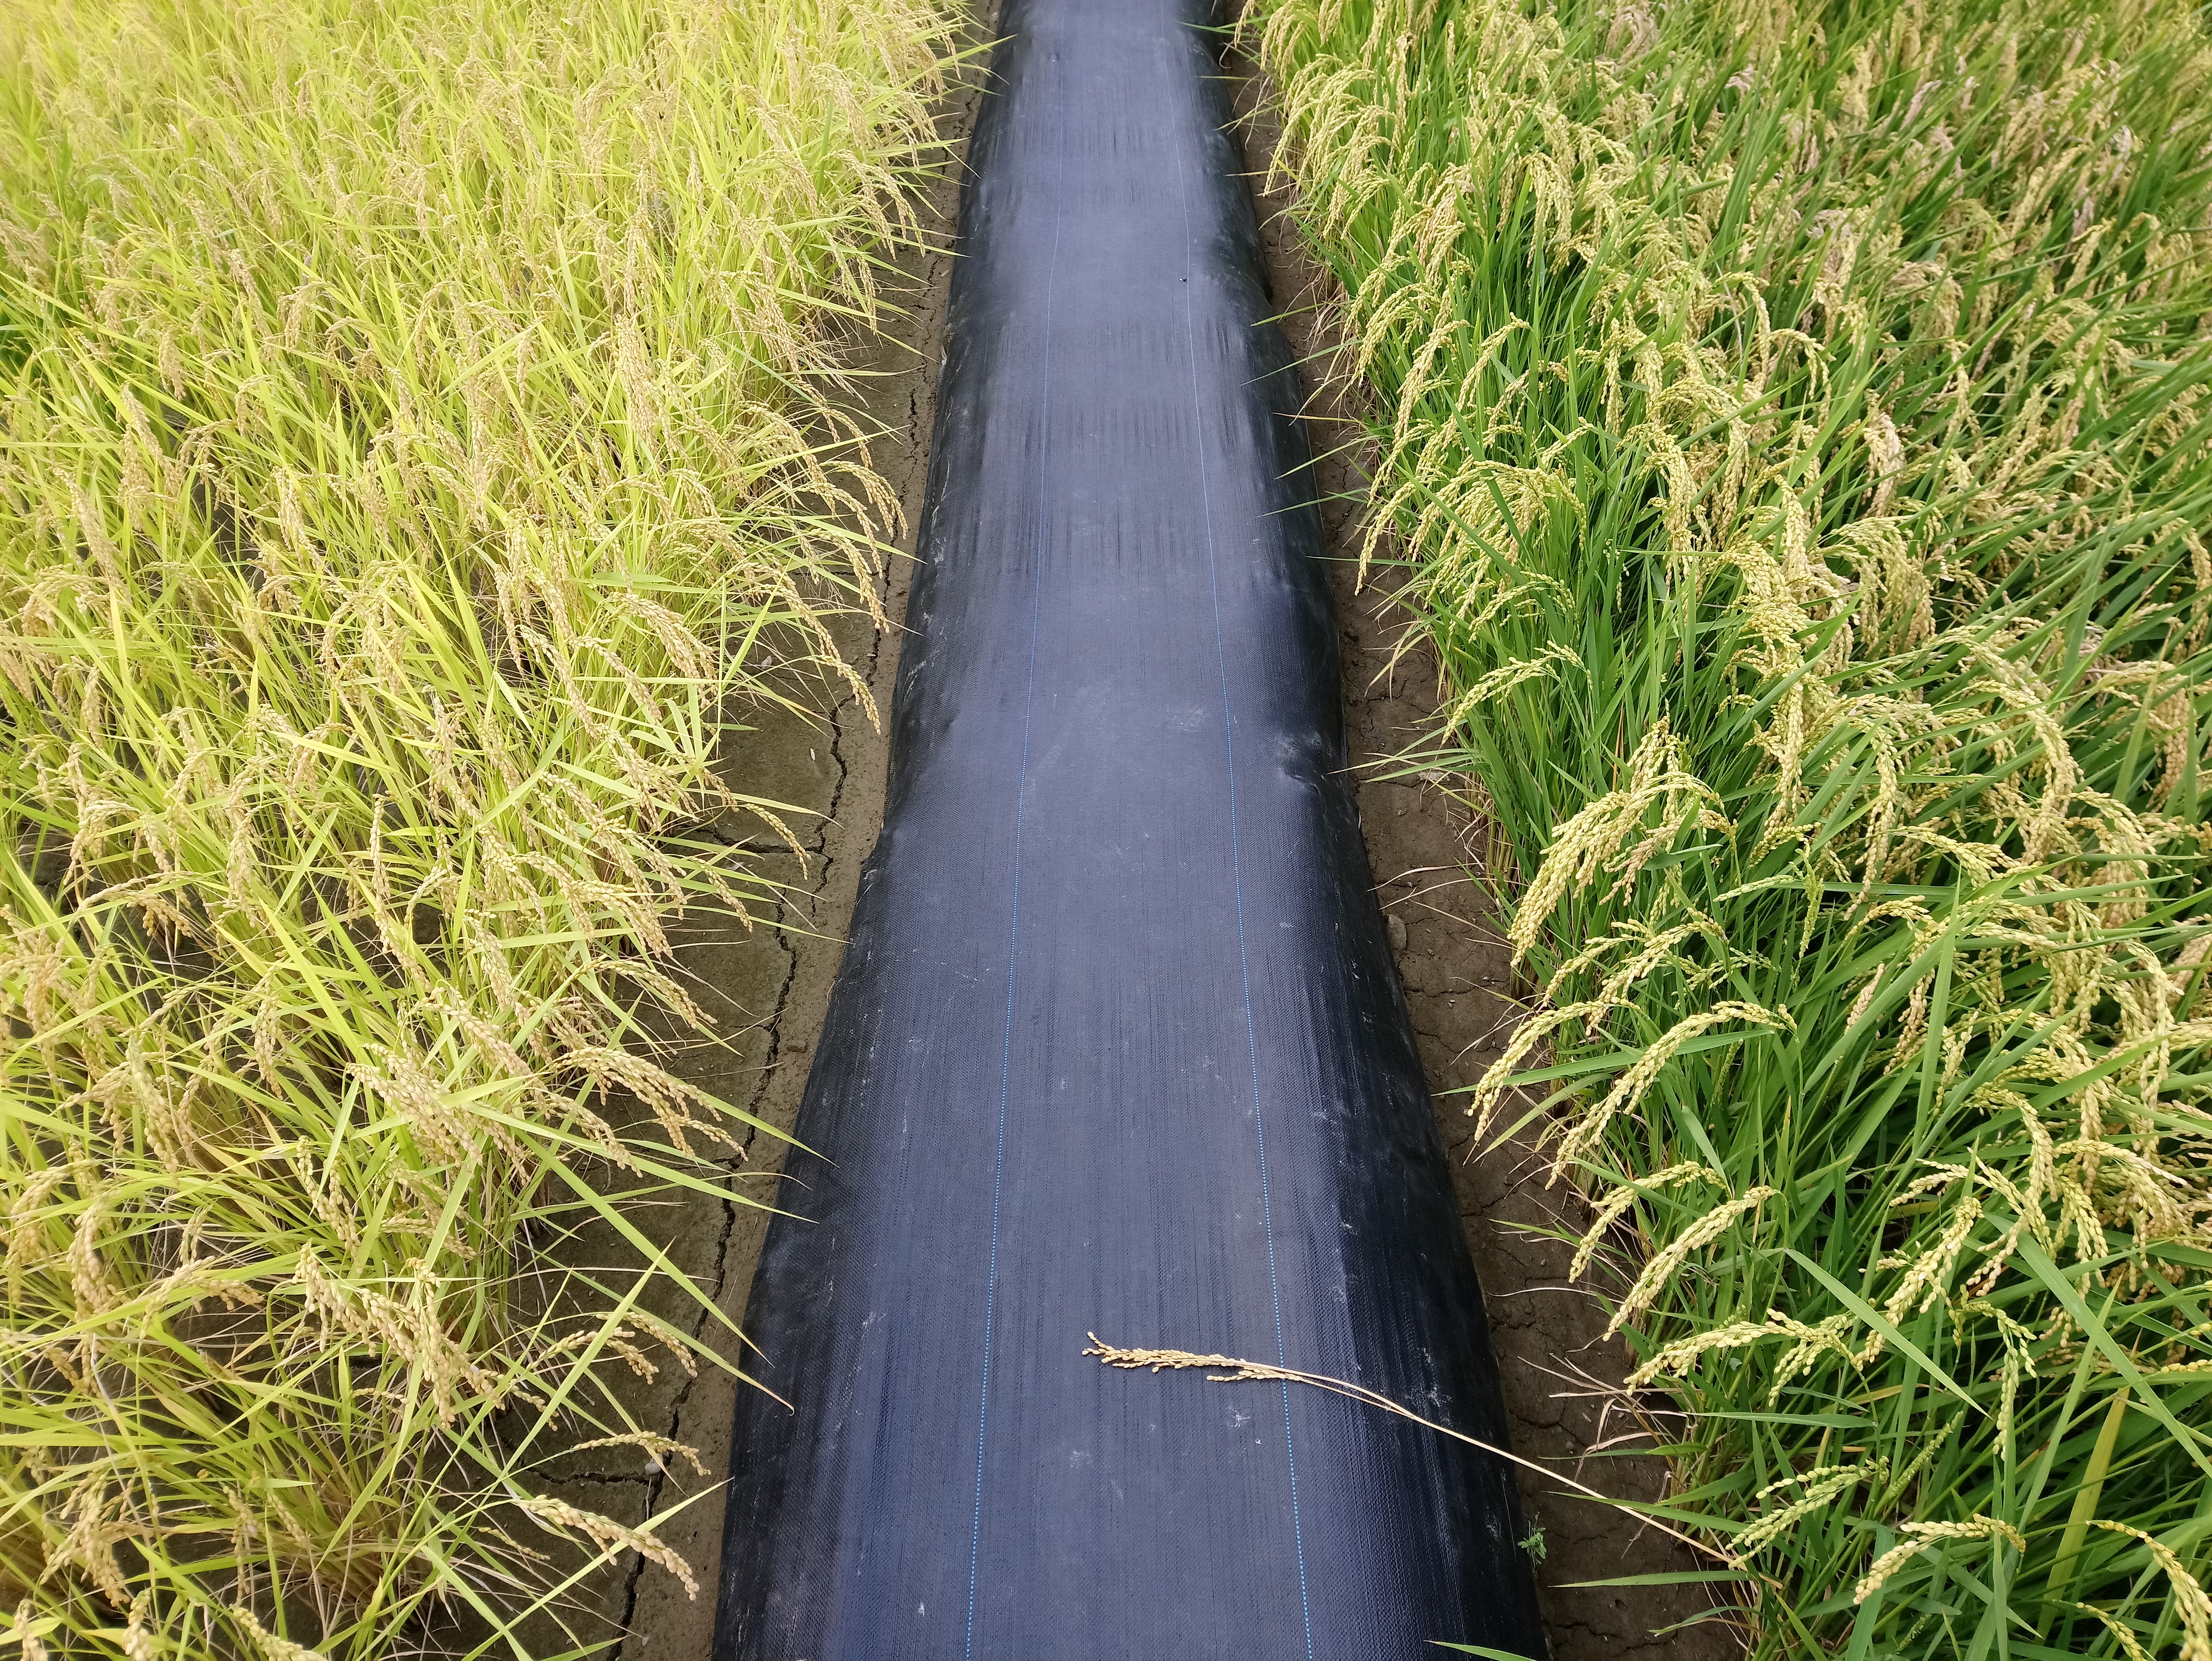 【USR系列報導】微生物農法連結地區小農　從點到線推動農業永續發展　成功大學生科系第三期USR計畫全方面關懷與提升農業